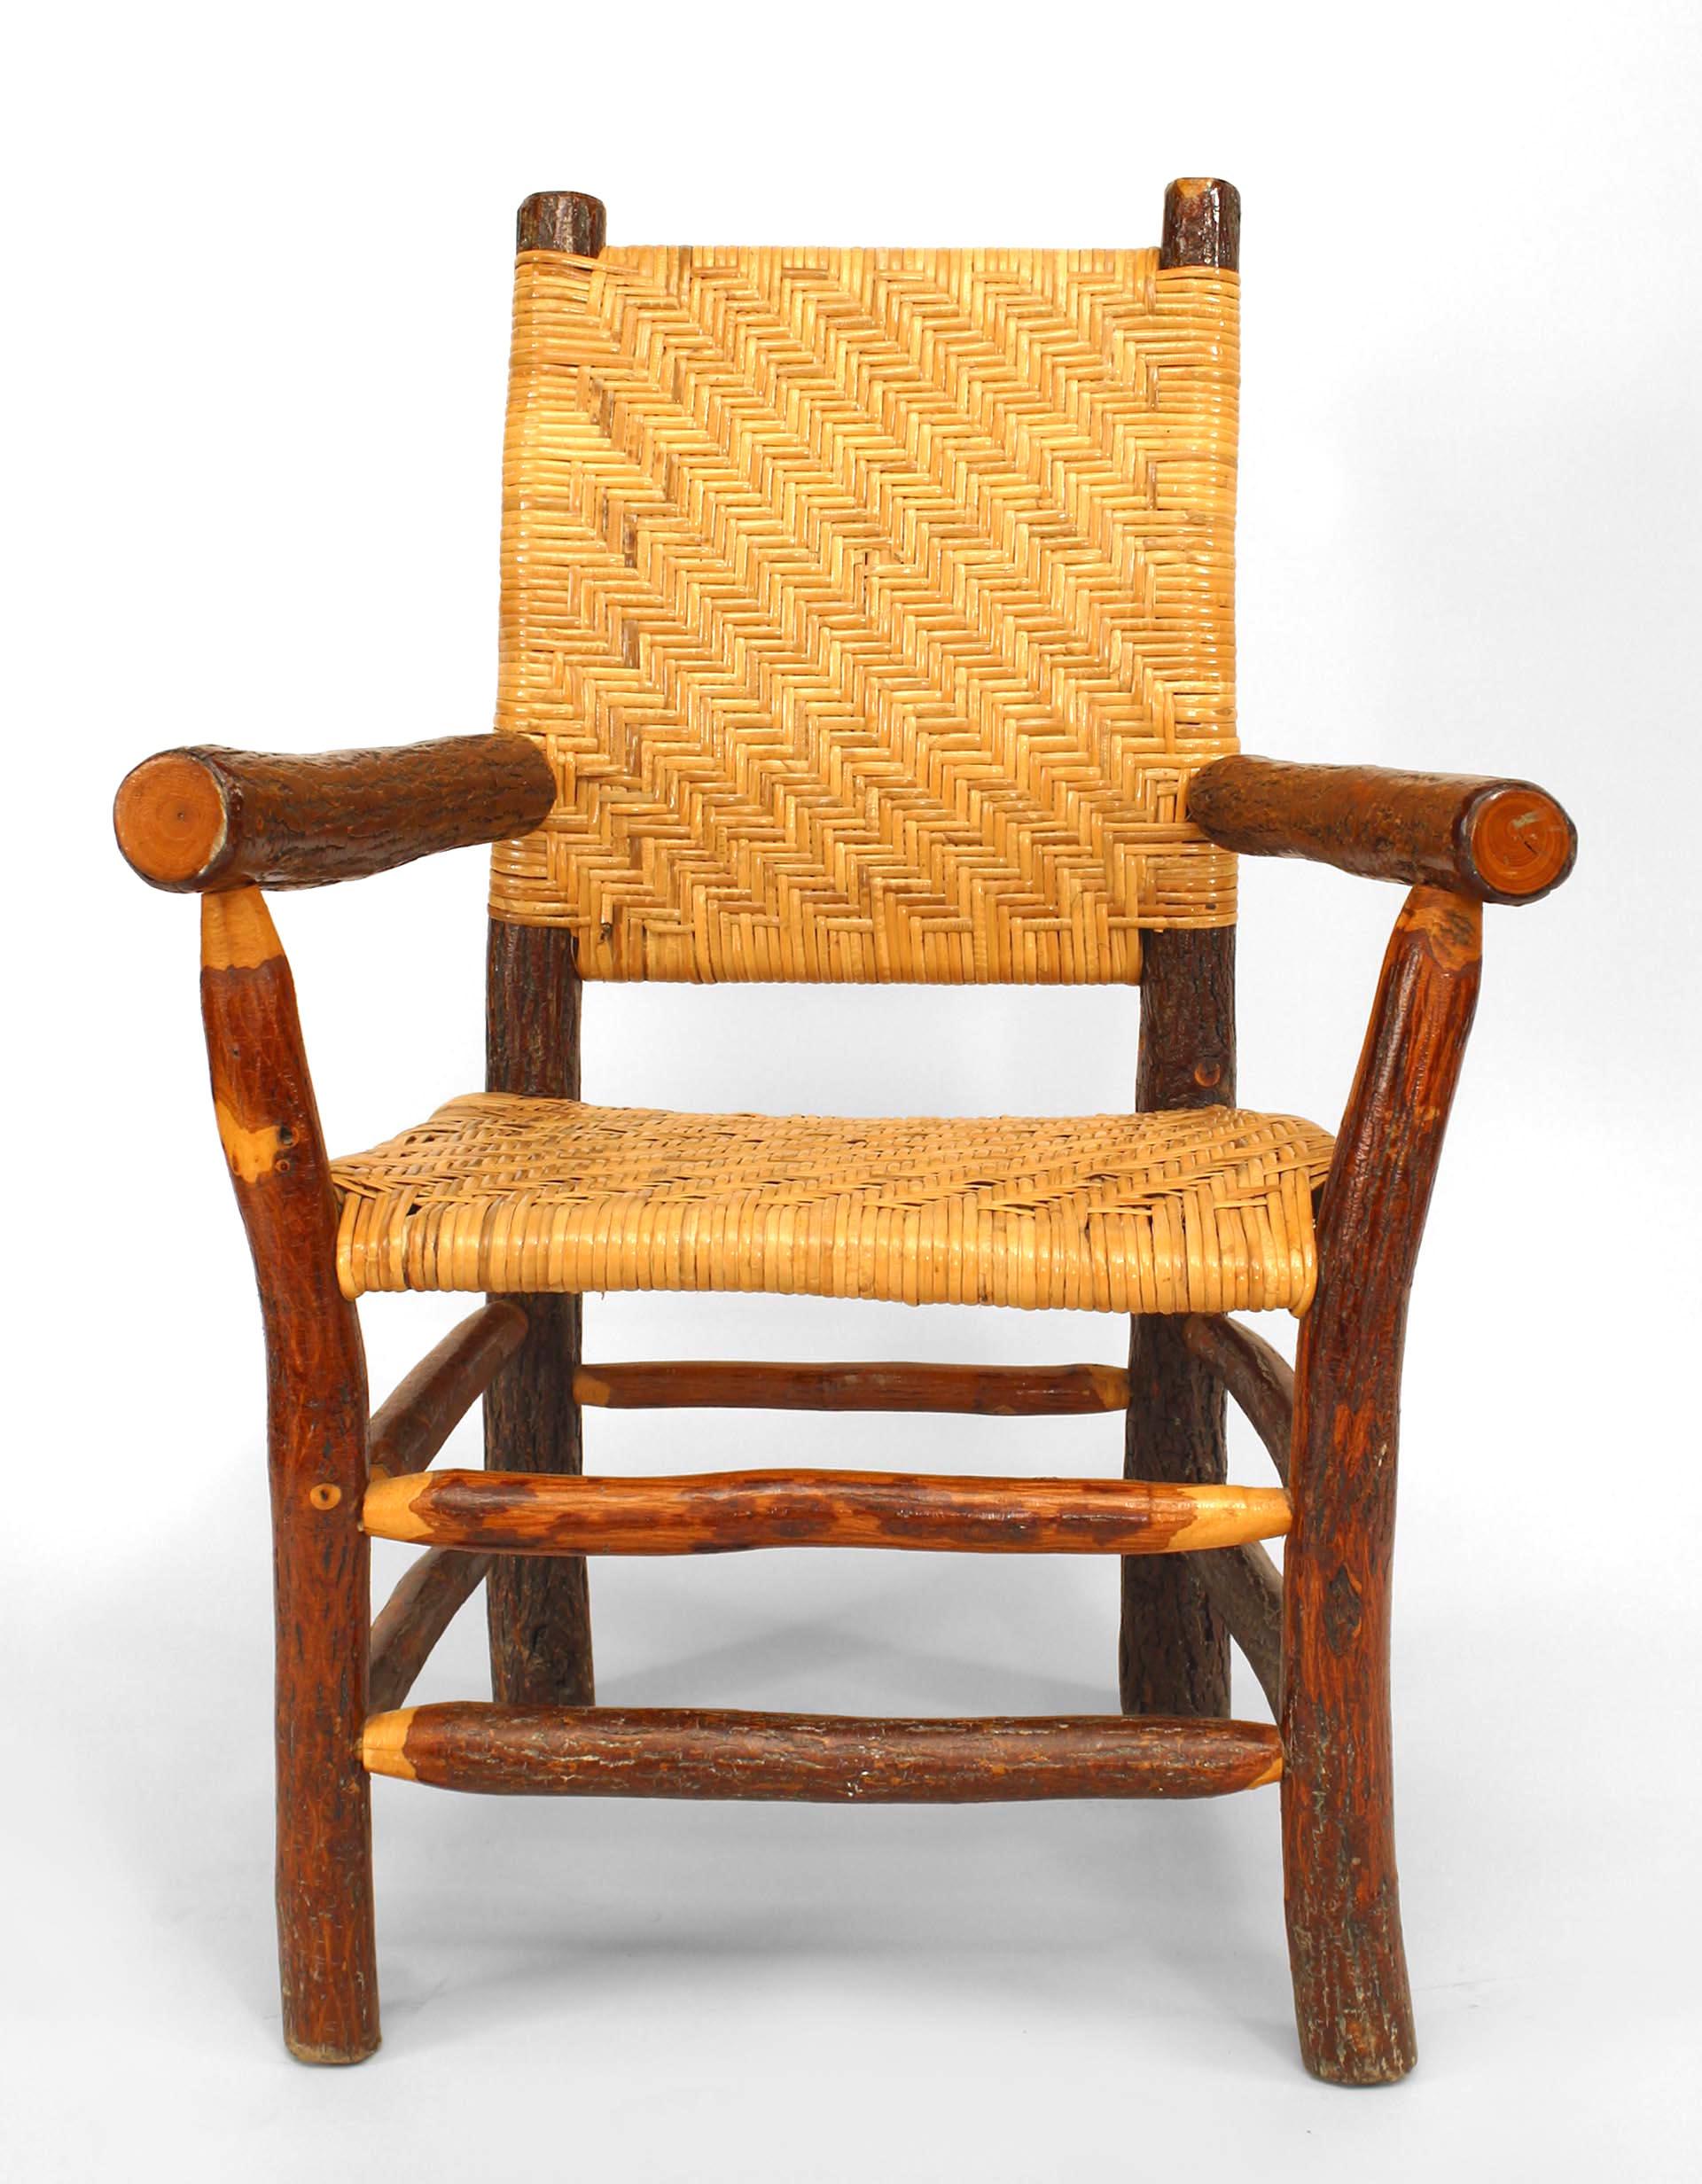 Satz von 4 amerikanischen rustikalen Old Hickory (1940er Jahre) offenen Sesseln mit geflochtener Sitzfläche und Rückenlehne und einer kastenförmigen doppelten Bahre.
